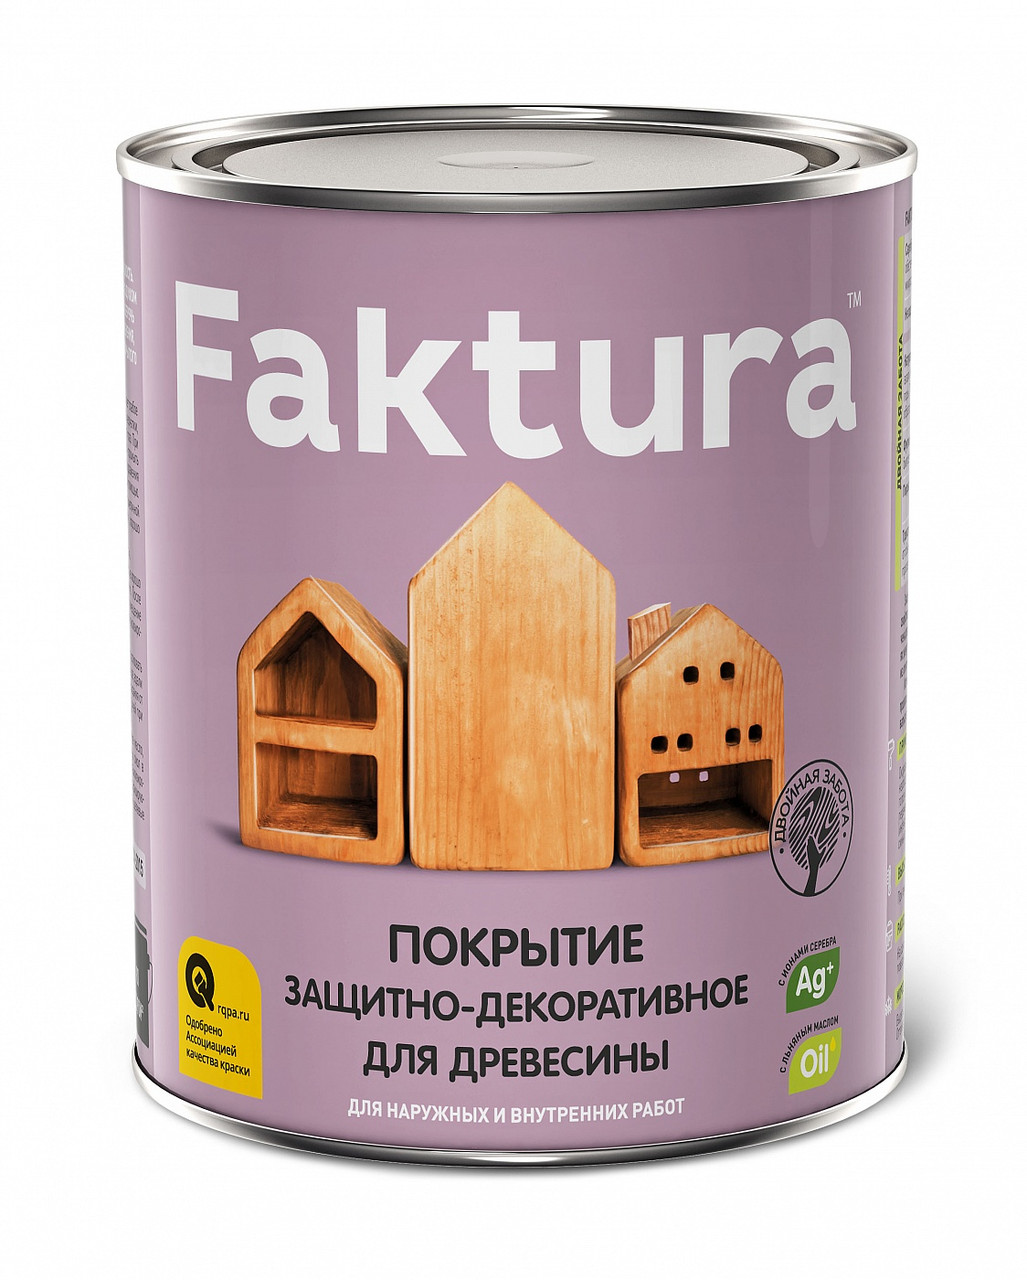 Покрытие FAKTURA защитно-декоративное для древесины бесцветное 9л